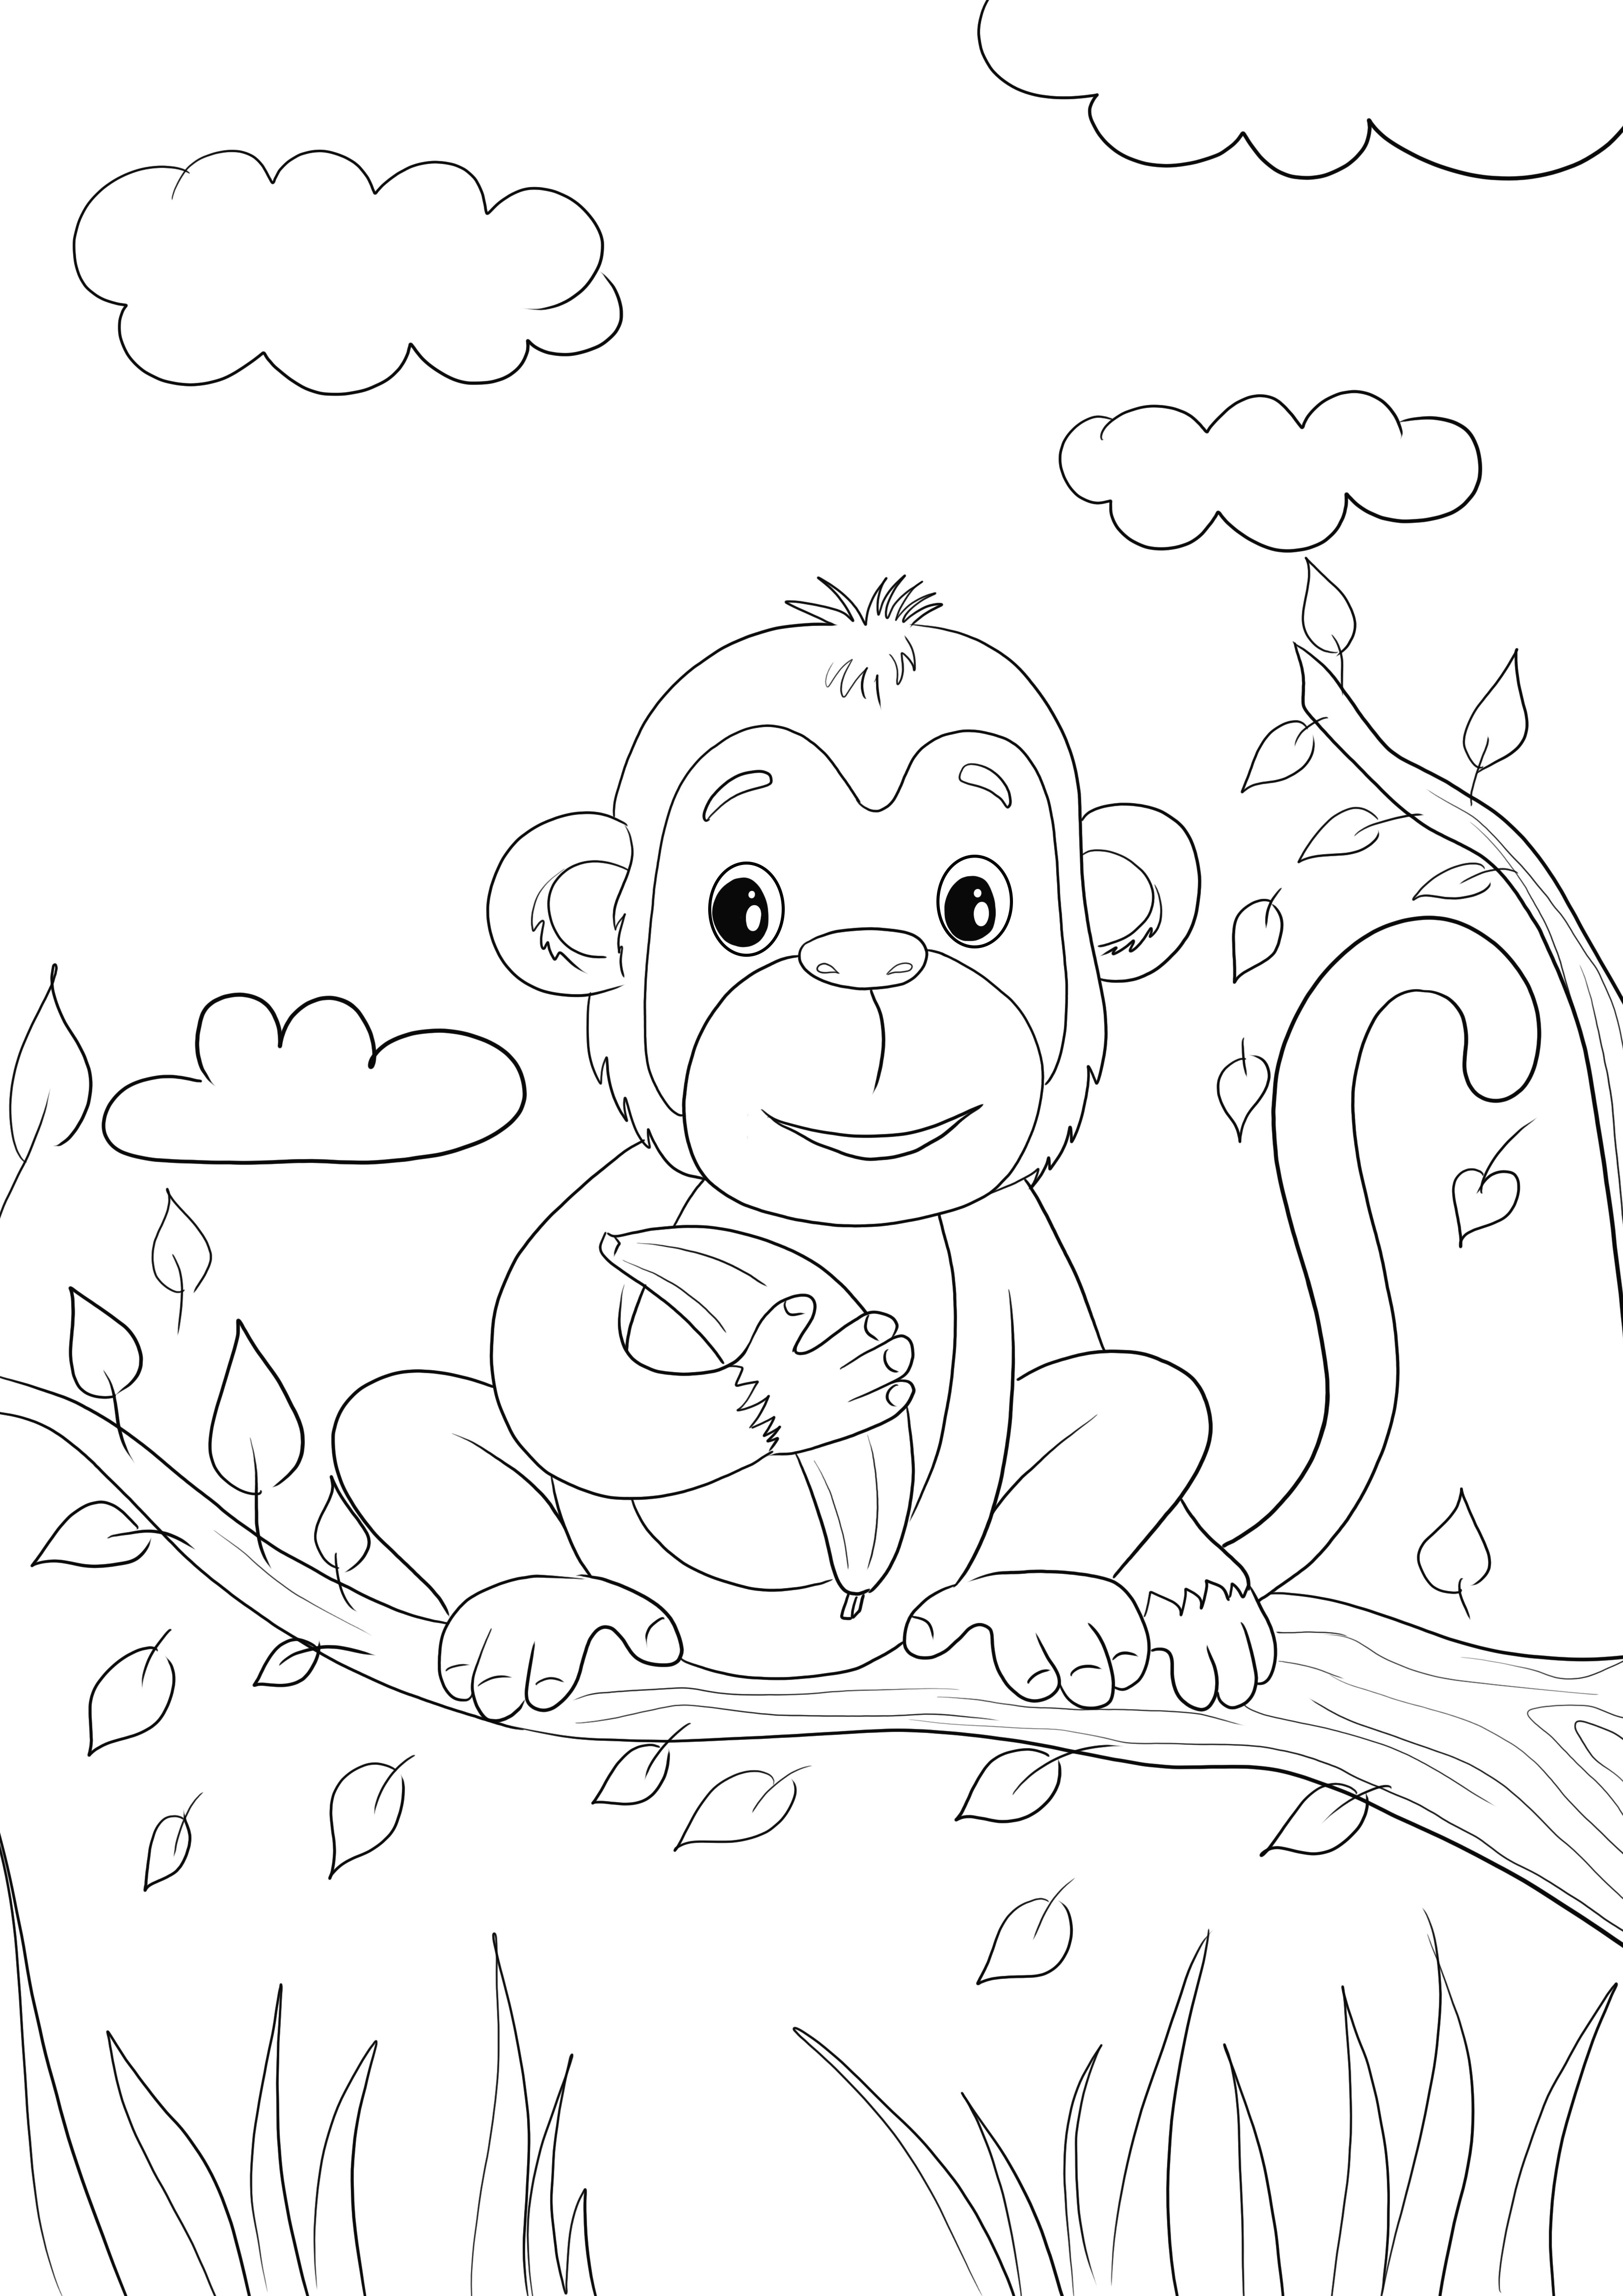 Aquí hay una imagen para colorear de un lindo bebé mono sosteniendo un plátano gratis para imprimir o guardar para más tarde